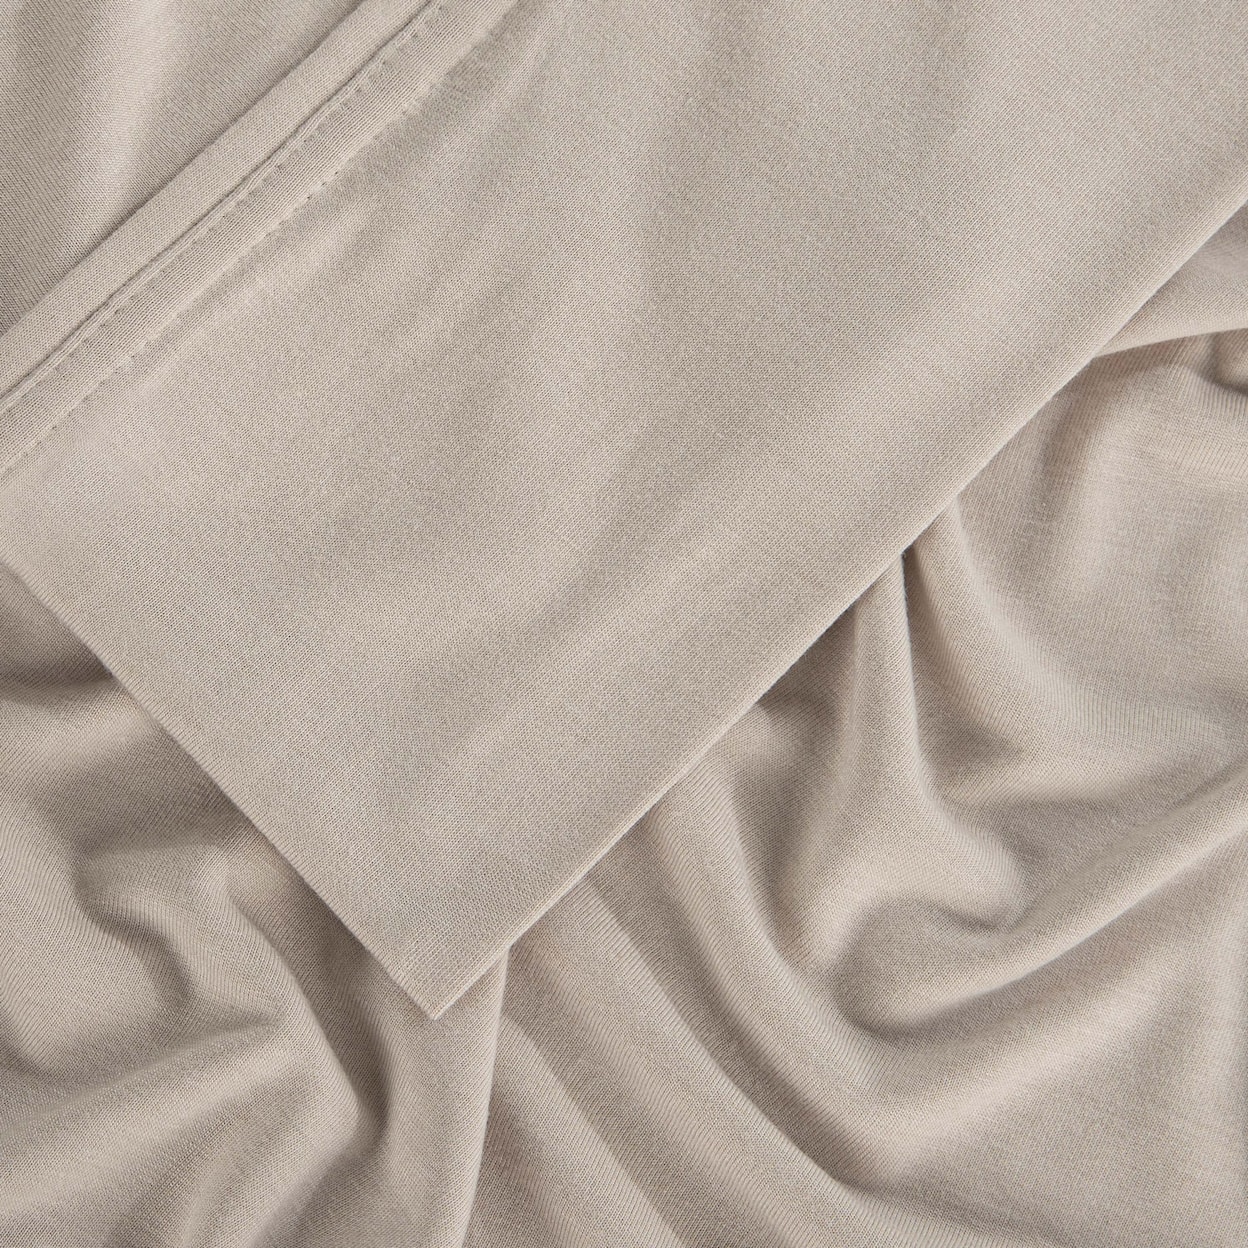 Bedgear Hyper-Wool Sheets Sheet Set, Beige, King/Cal King